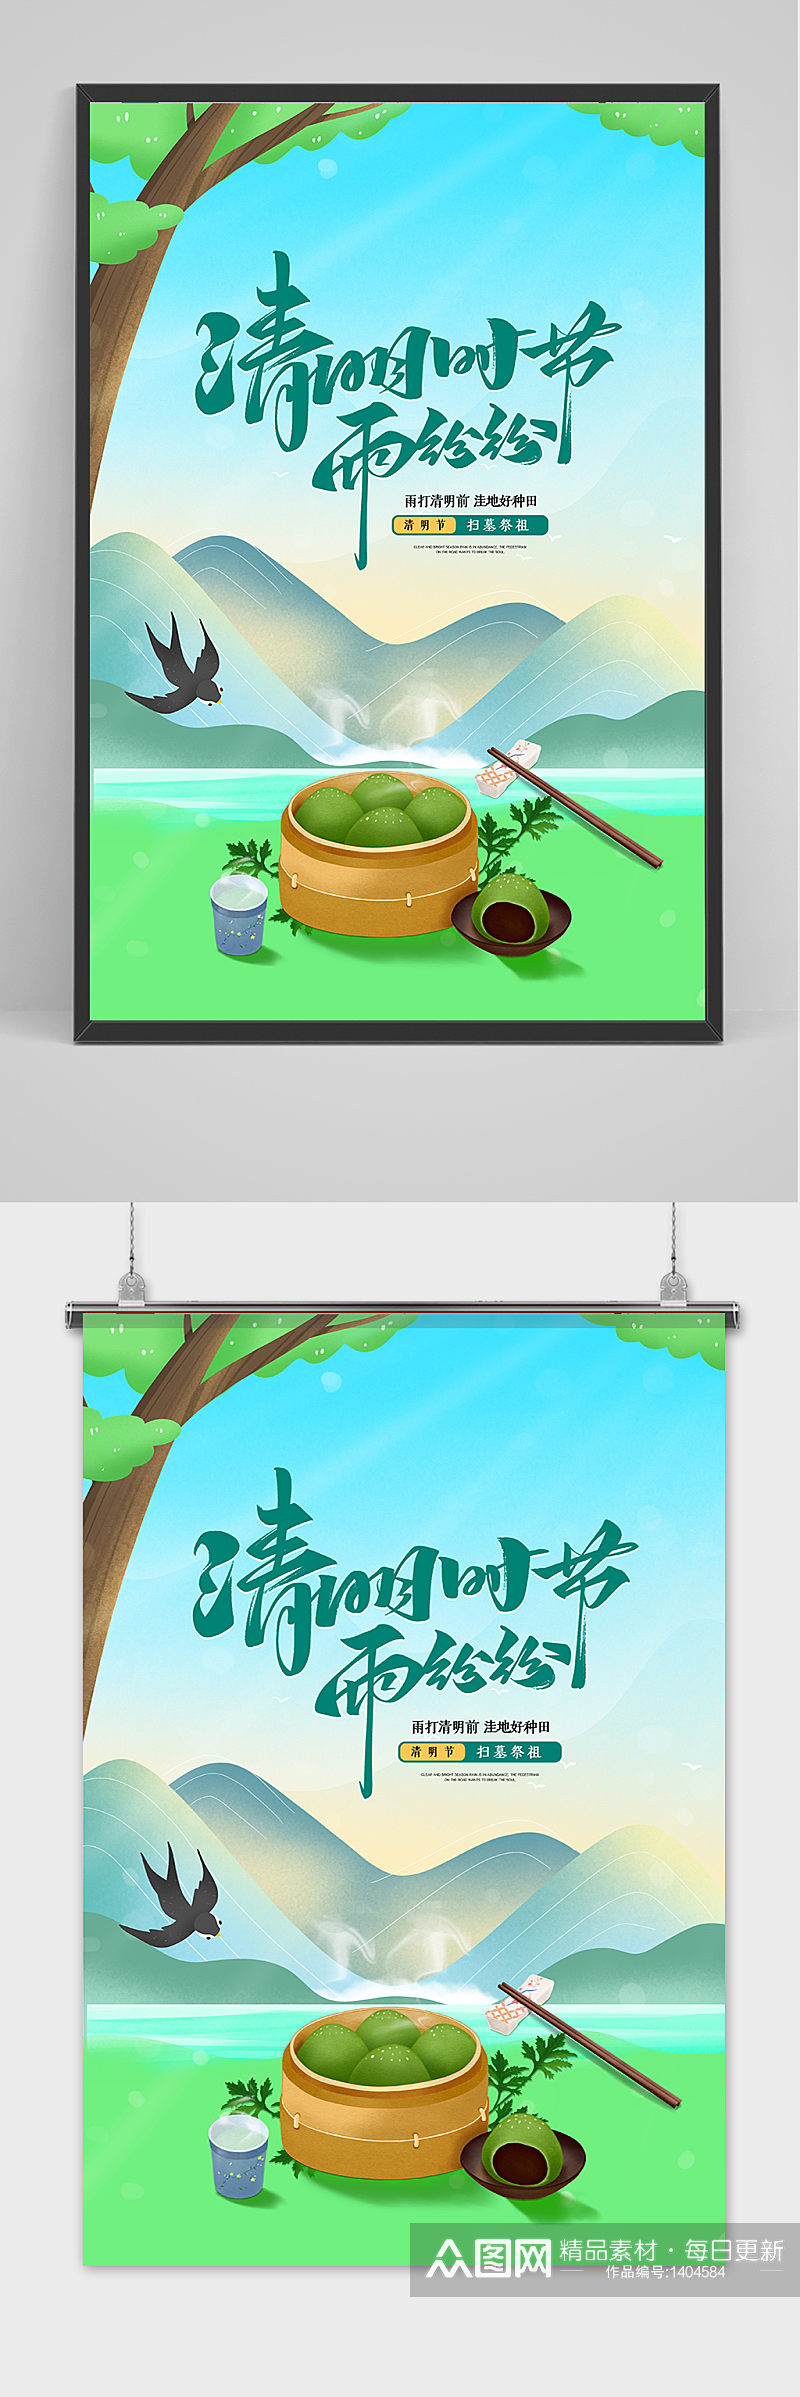 绿色中国风清明节传统节日海报素材